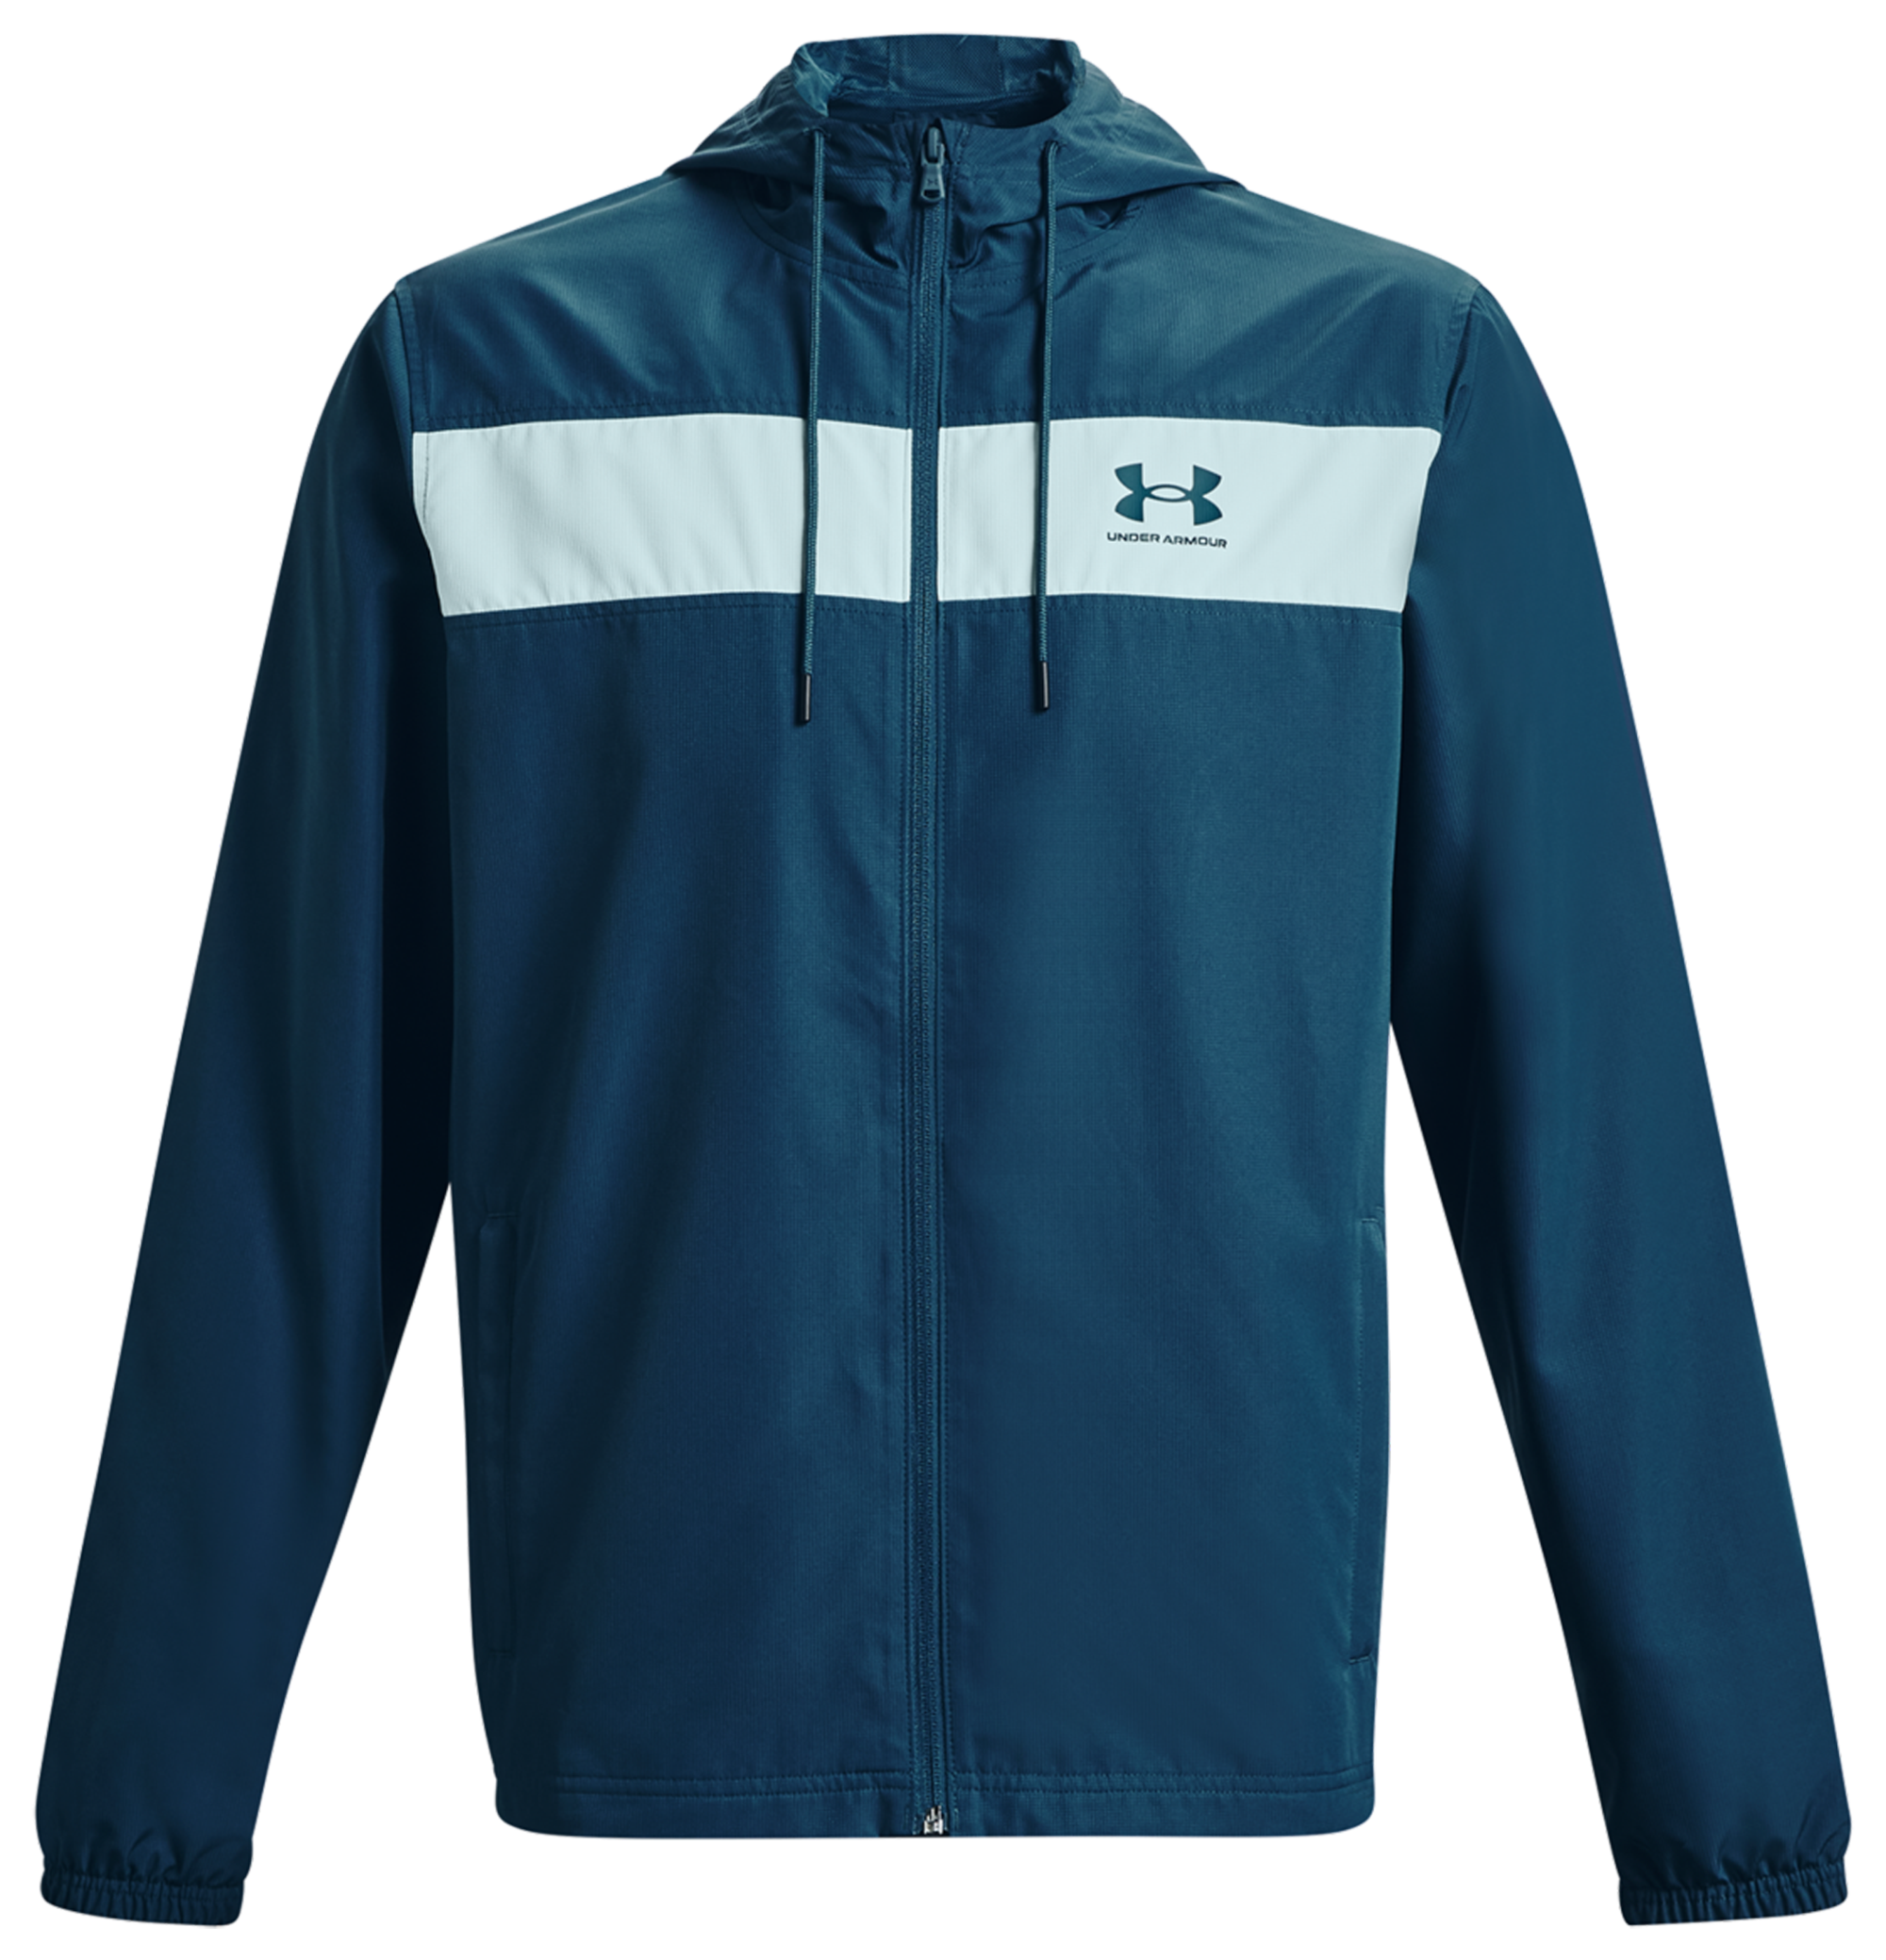 Under Armour Men's UA Sport style Windbreaker Jacket